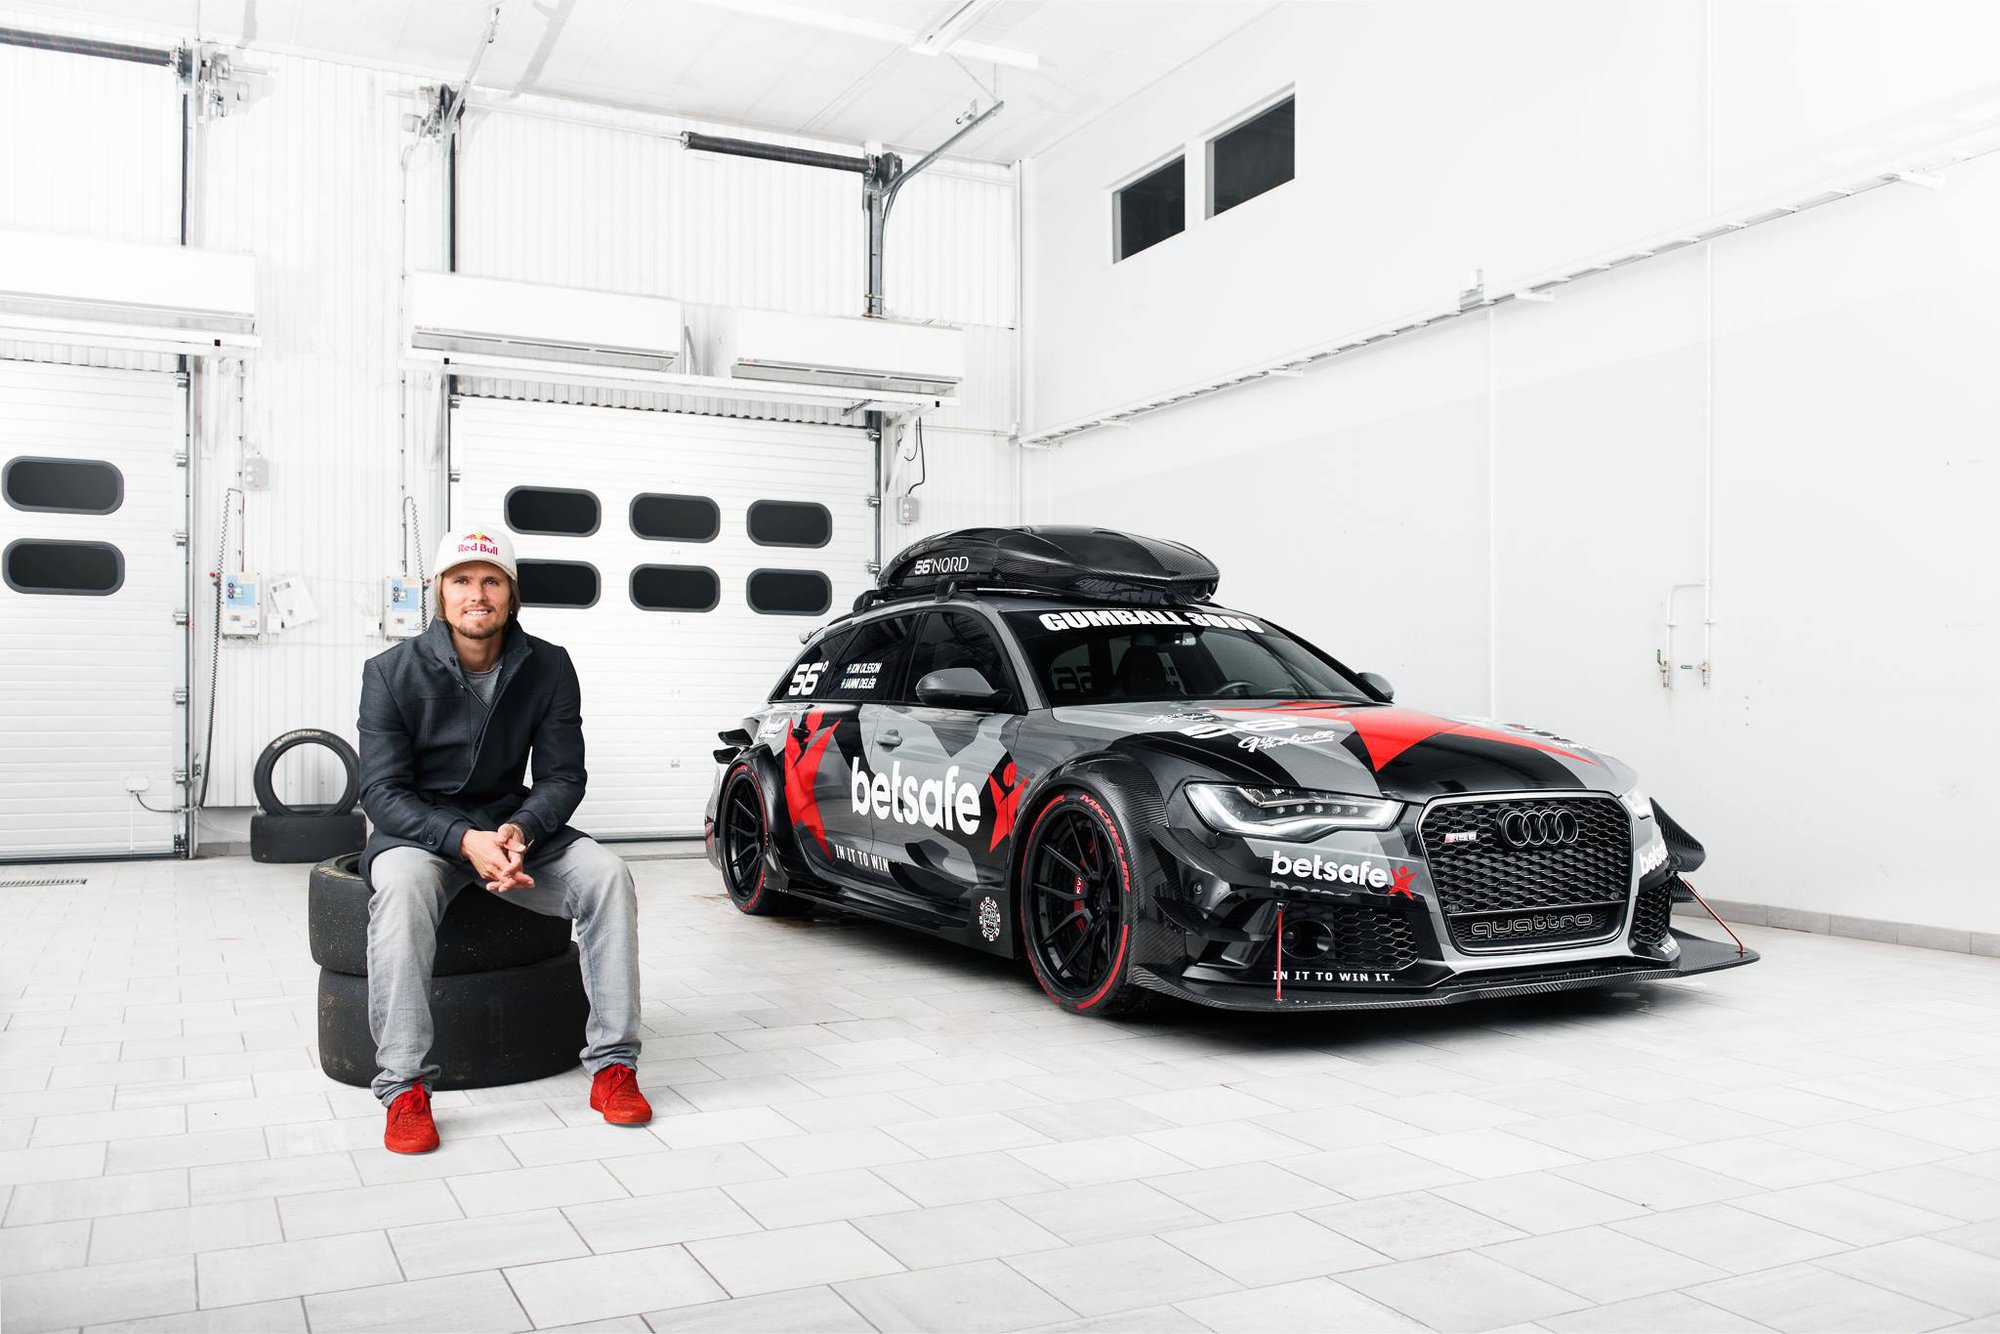 Hrdý bývalý majitel a tvůrce Audi RS6 DTM Jon Olsson se svým autem.